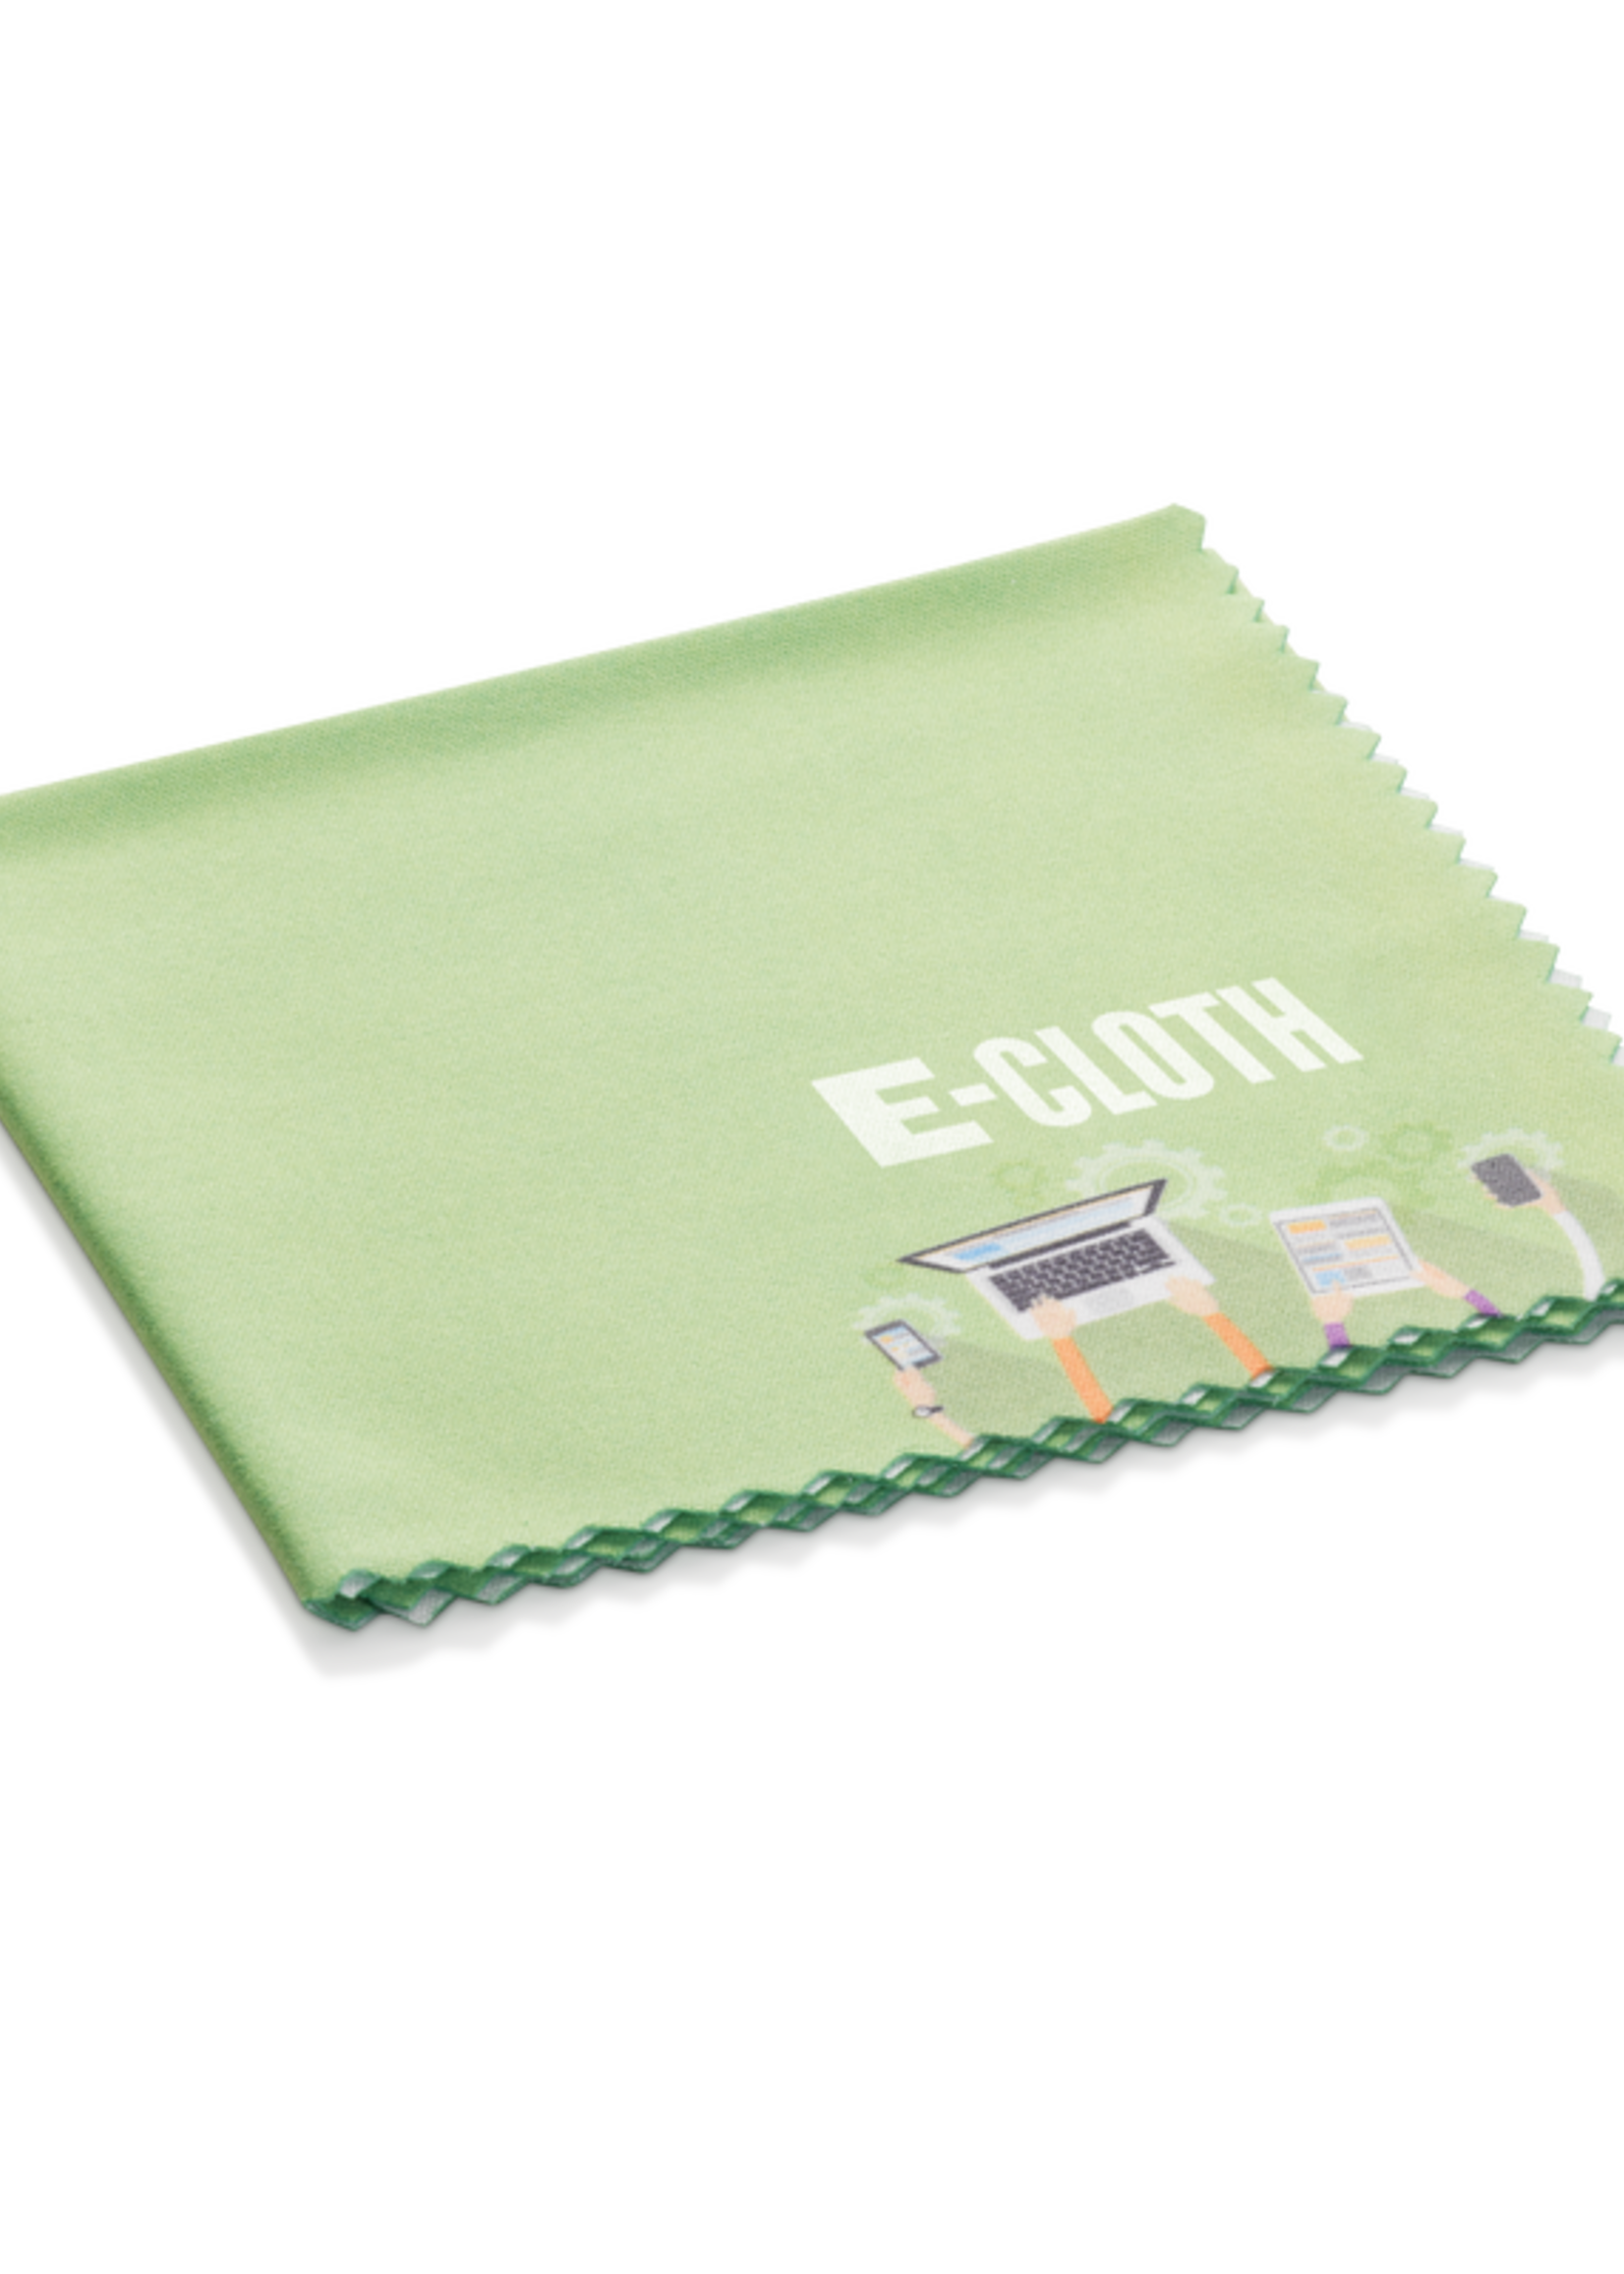 E-Cloth Personal Electronics Cloth